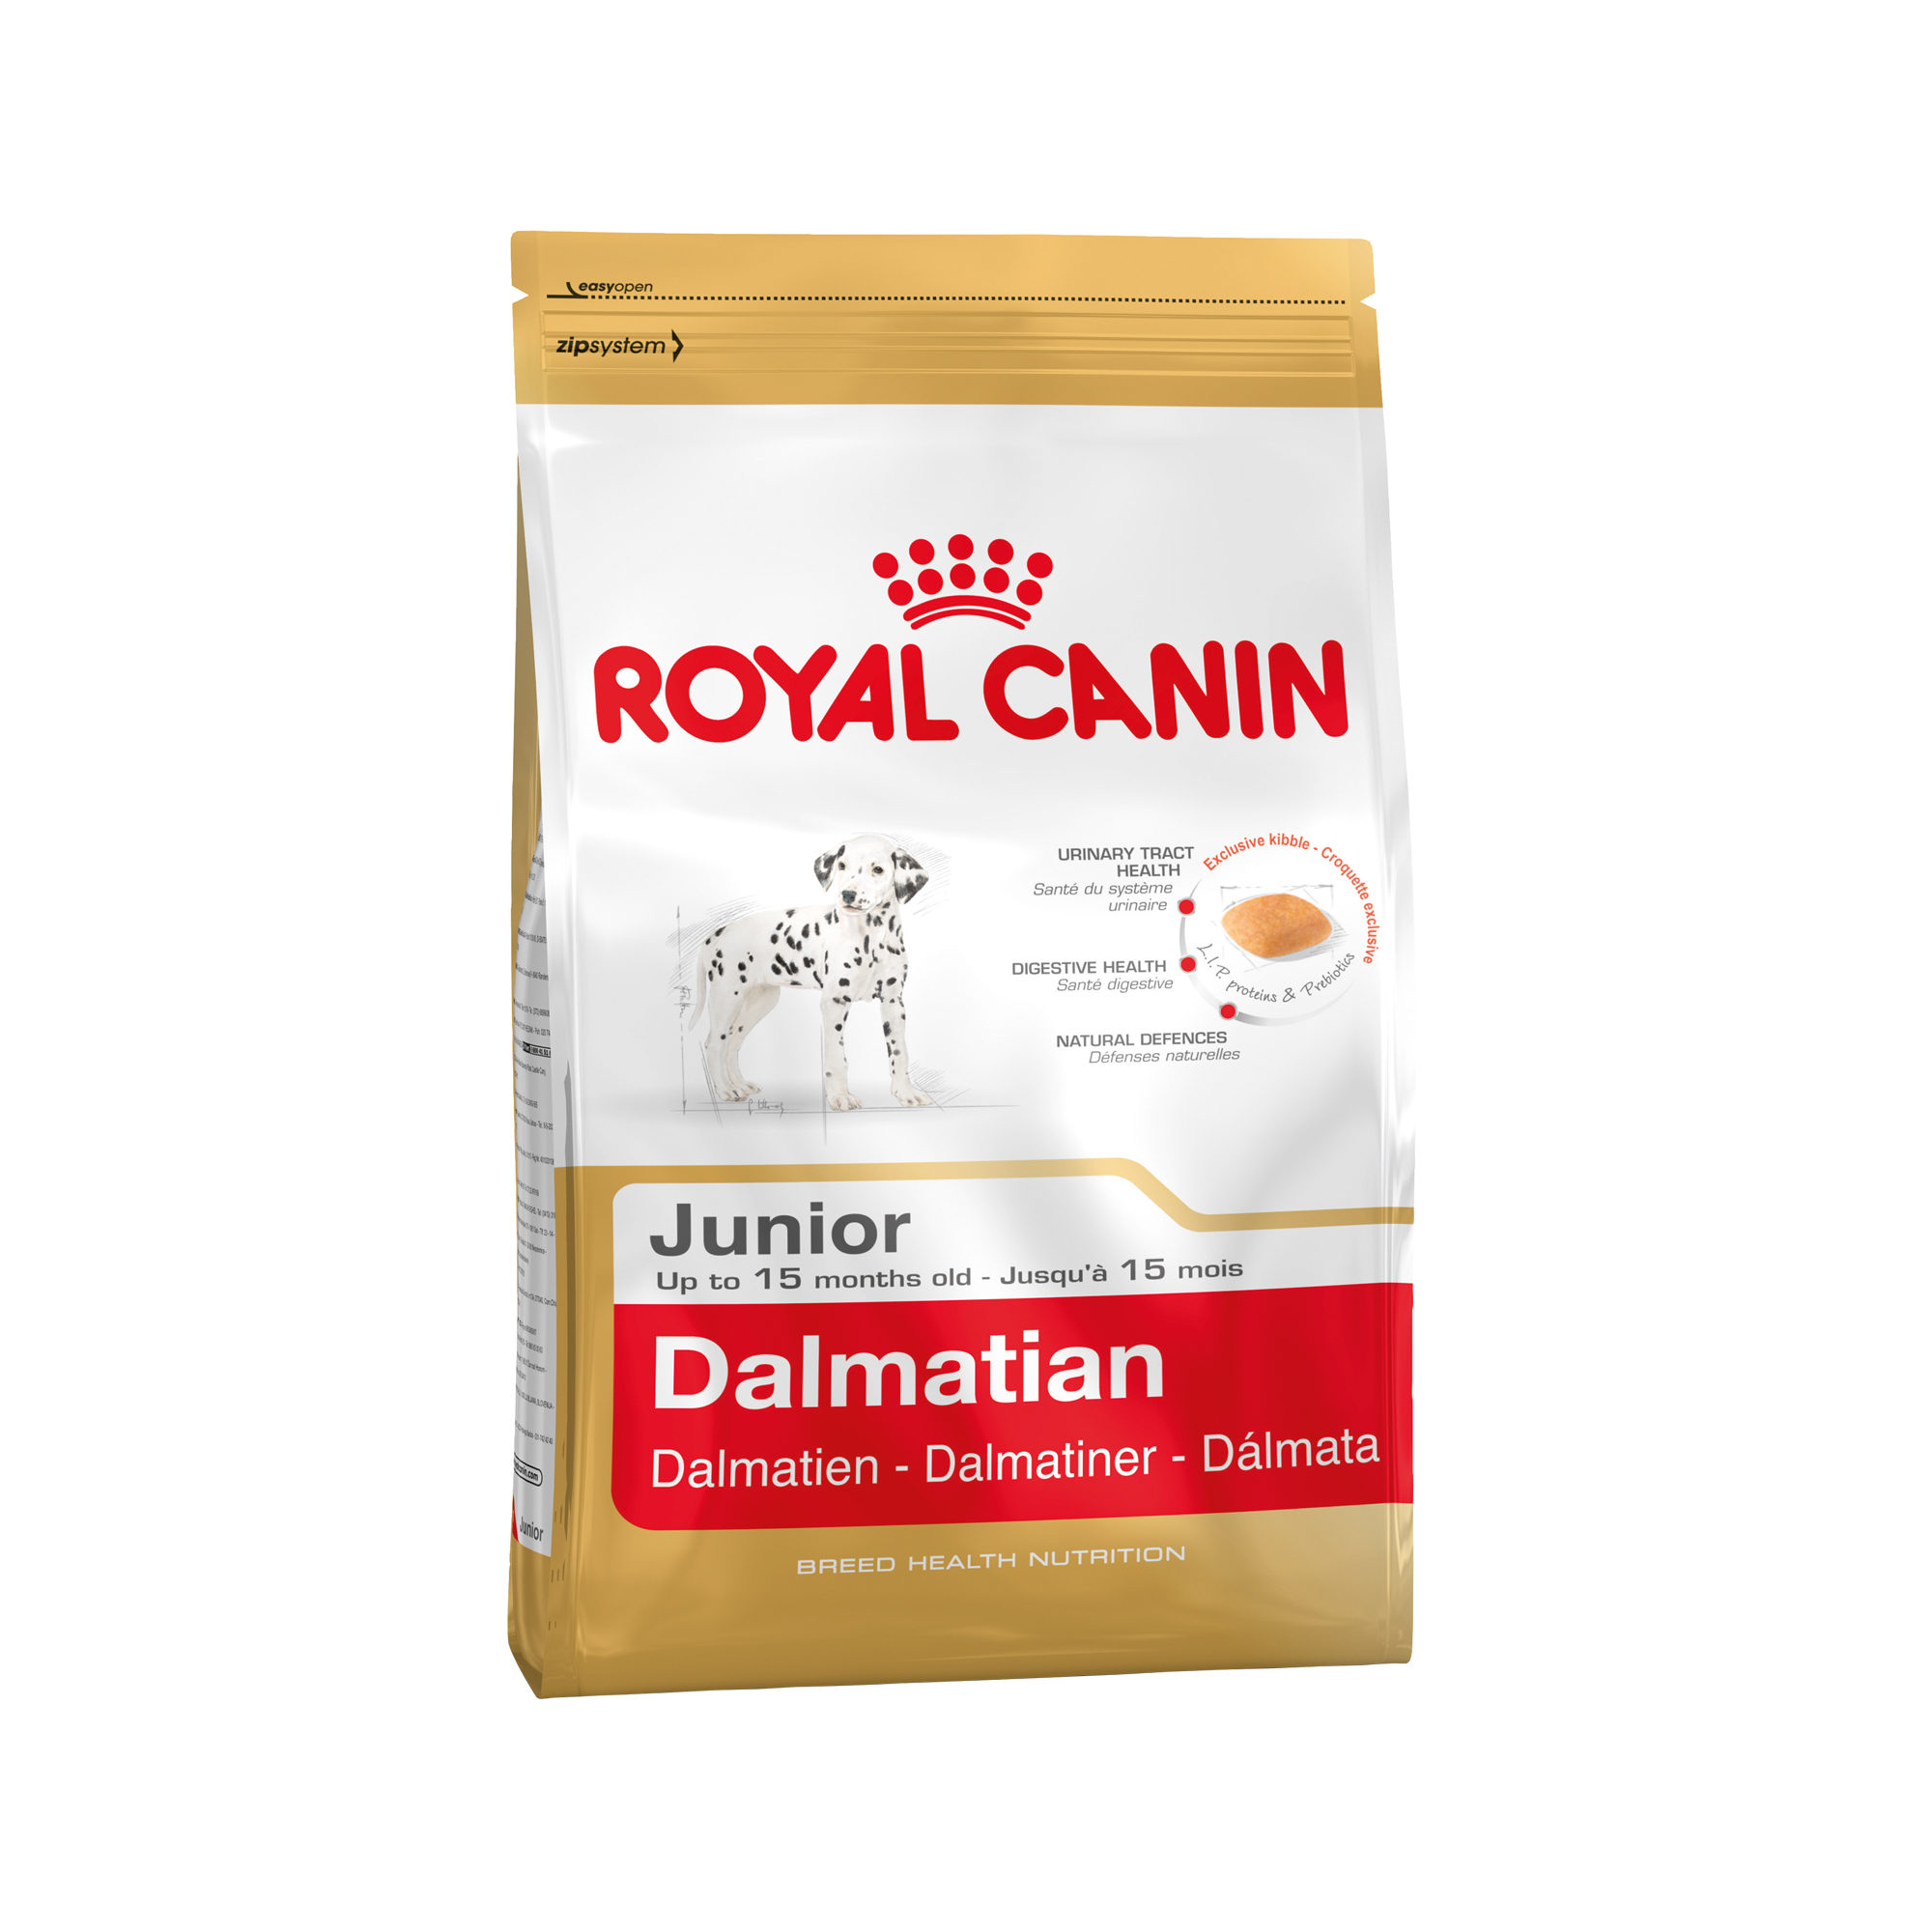 ROYAL CANIN Dalmatian 25 Junior 12 kg, 1er Pack (1 x 12 kg)